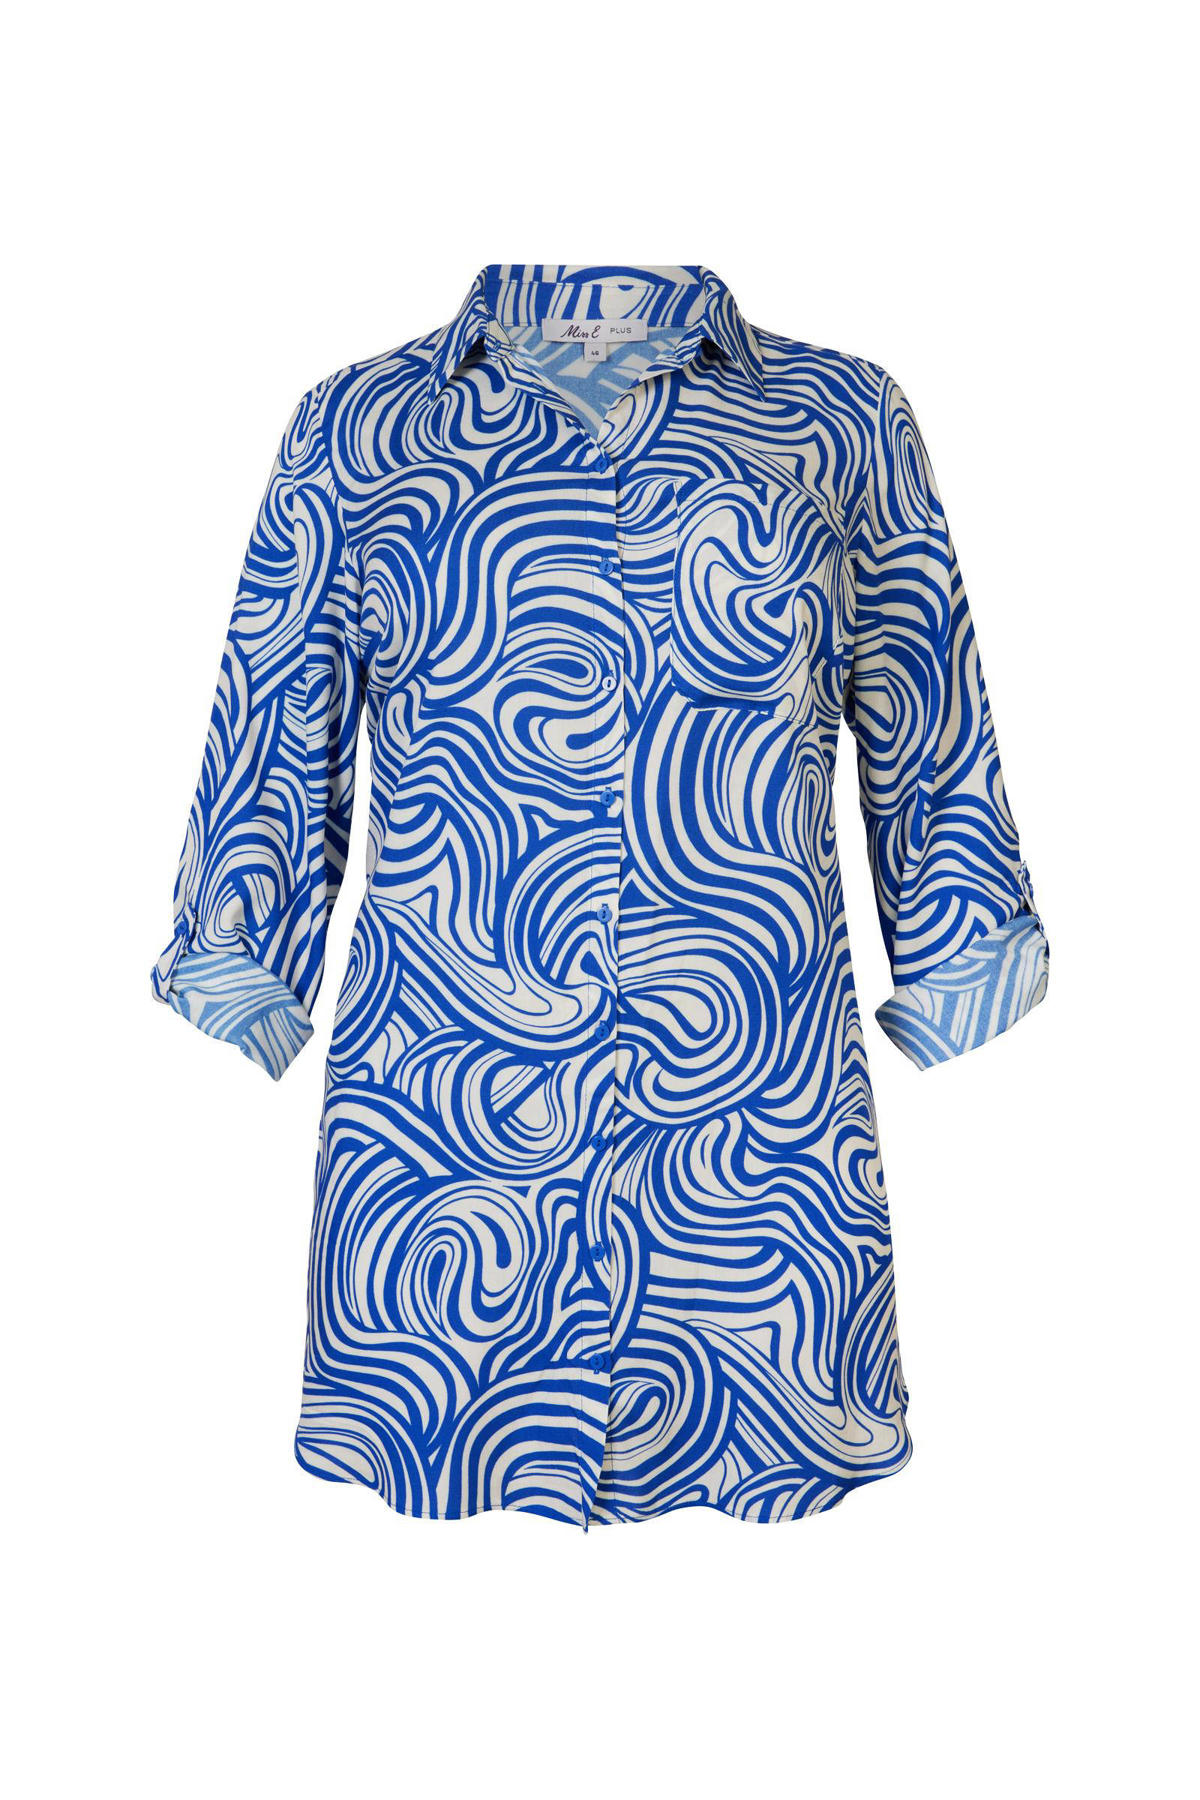 samenzwering waar dan ook Hoe dan ook Miss Etam Plus blouse Lilly met grafische print gebroken wit// blauw |  wehkamp